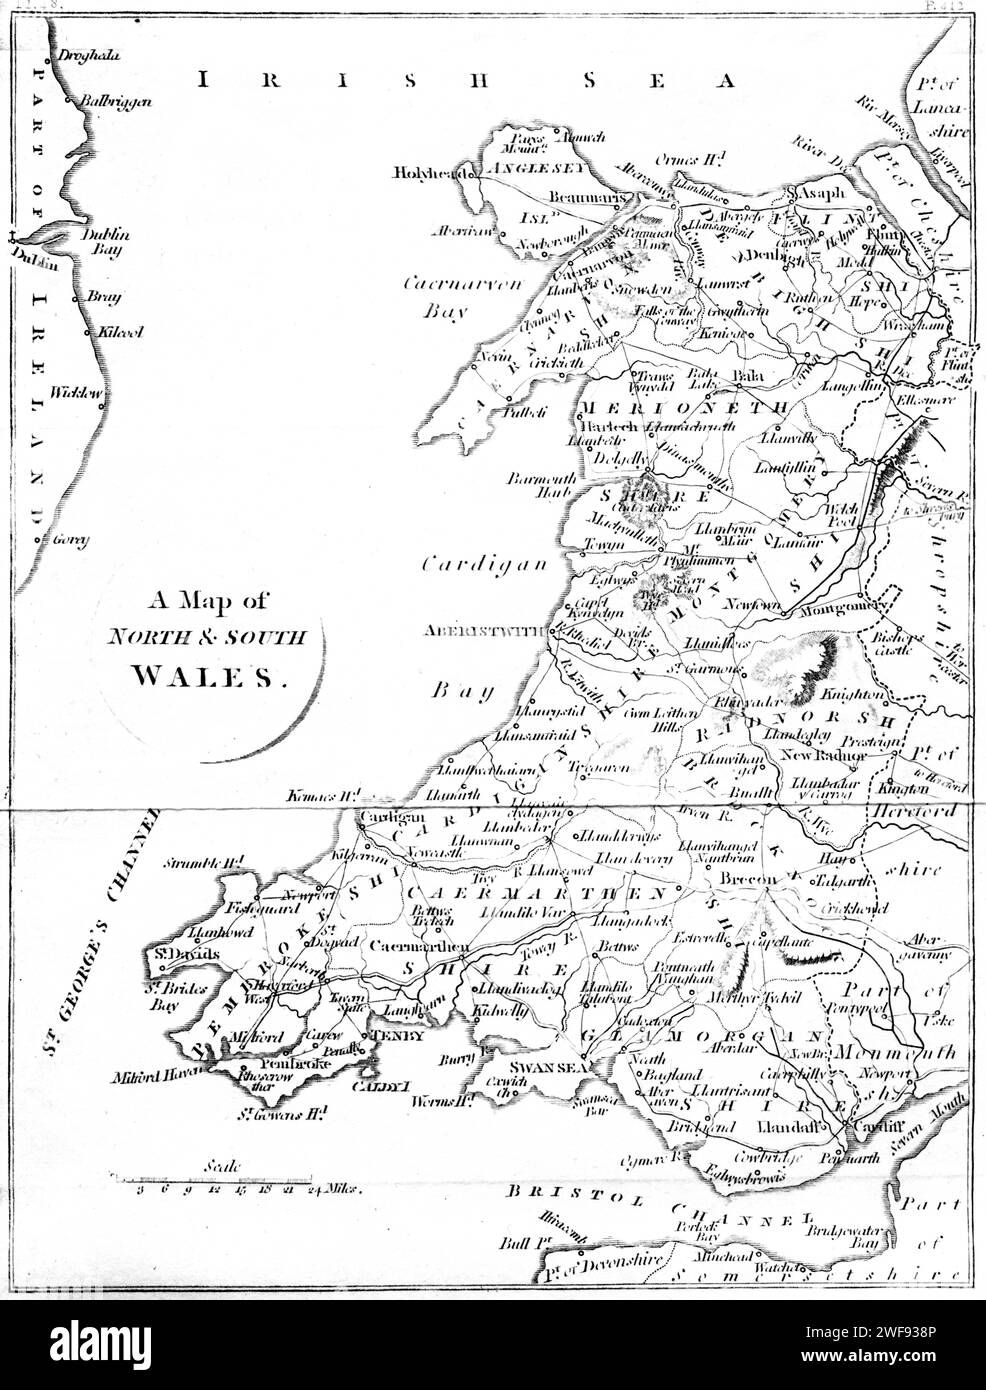 Eine Karte von Nord- und Südwales Großbritannien, die mit hoher Auflösung aus einem 1806 gedruckten Buch gescannt wurde. Dieses Bild ist frei von jeglichem historischen Urheberrecht. Stockfoto